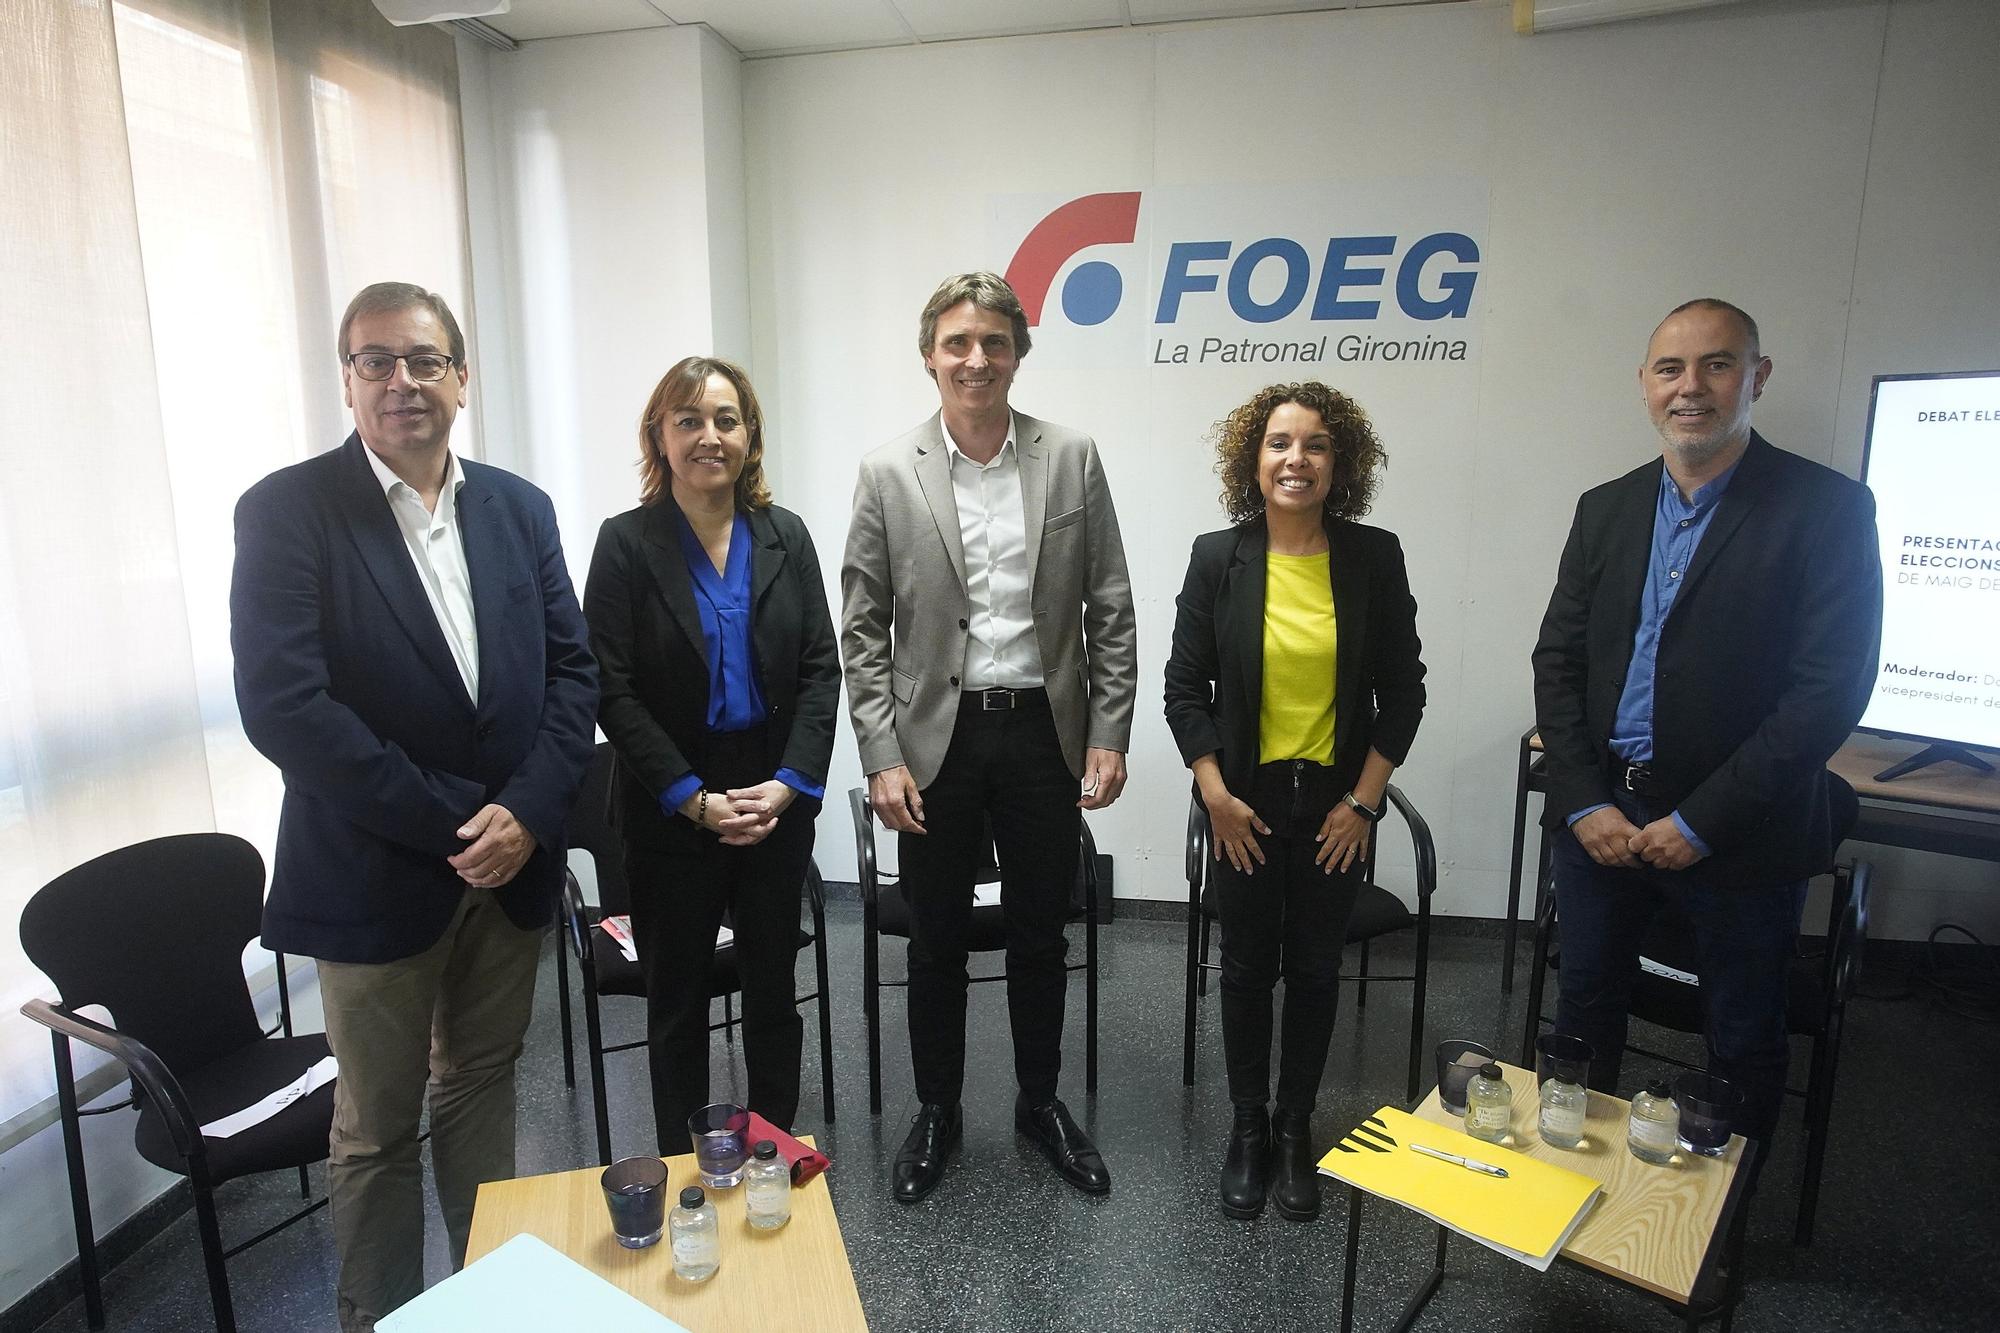 El debat dels candidats gironins a la FOEG en imatges
